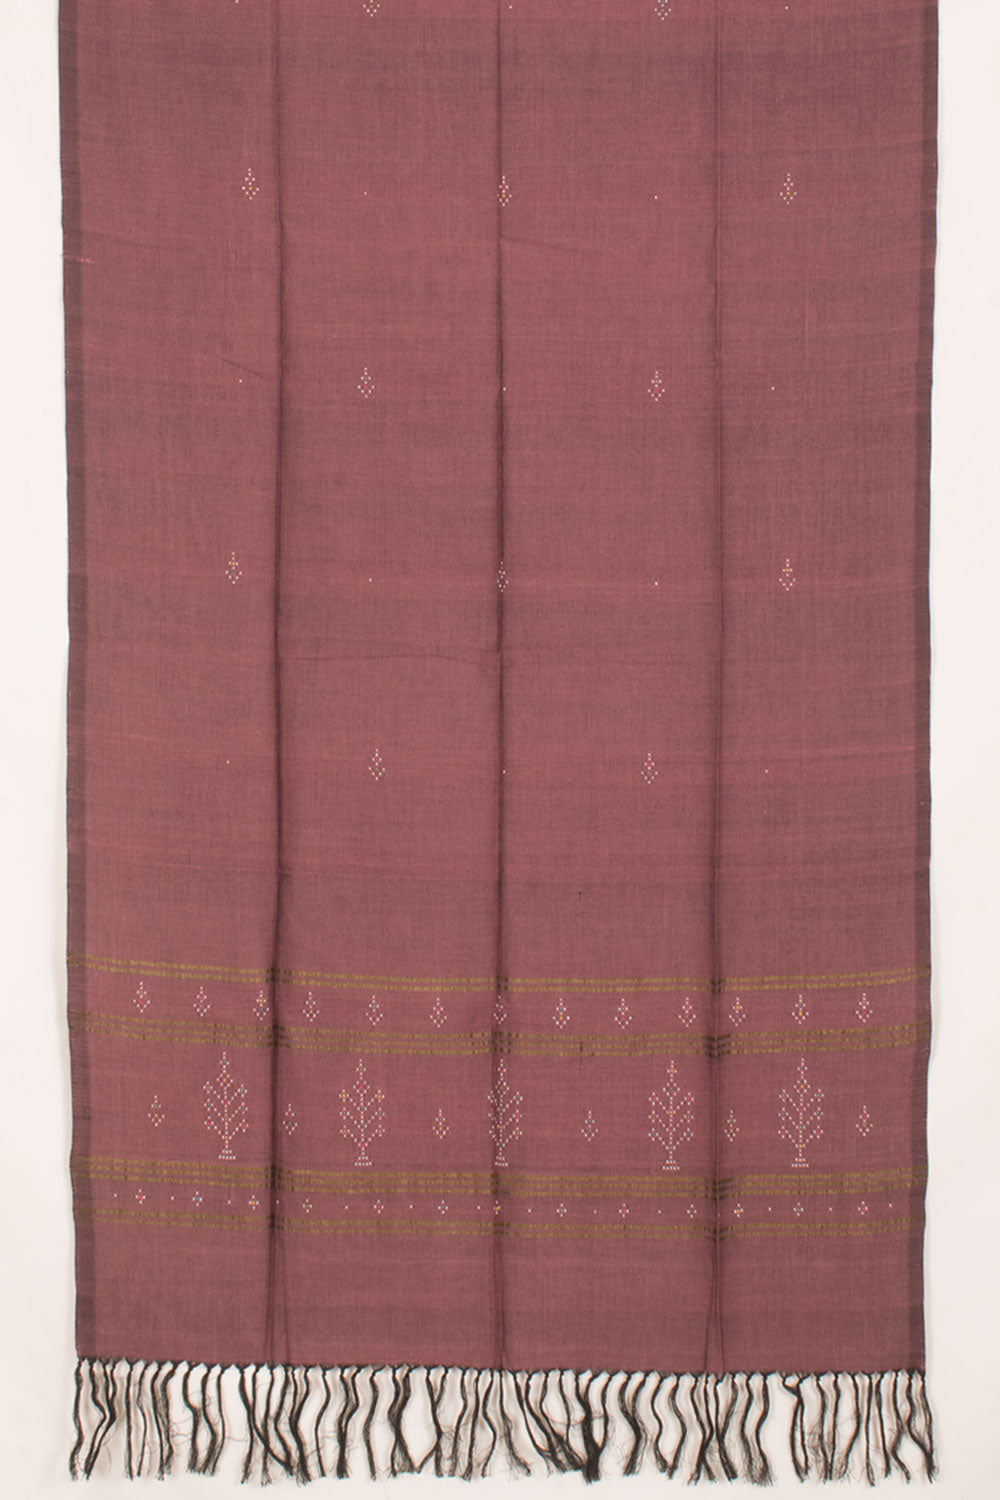 Tangaliya Cotton 2-Piece Salwar Suit Material 10058644